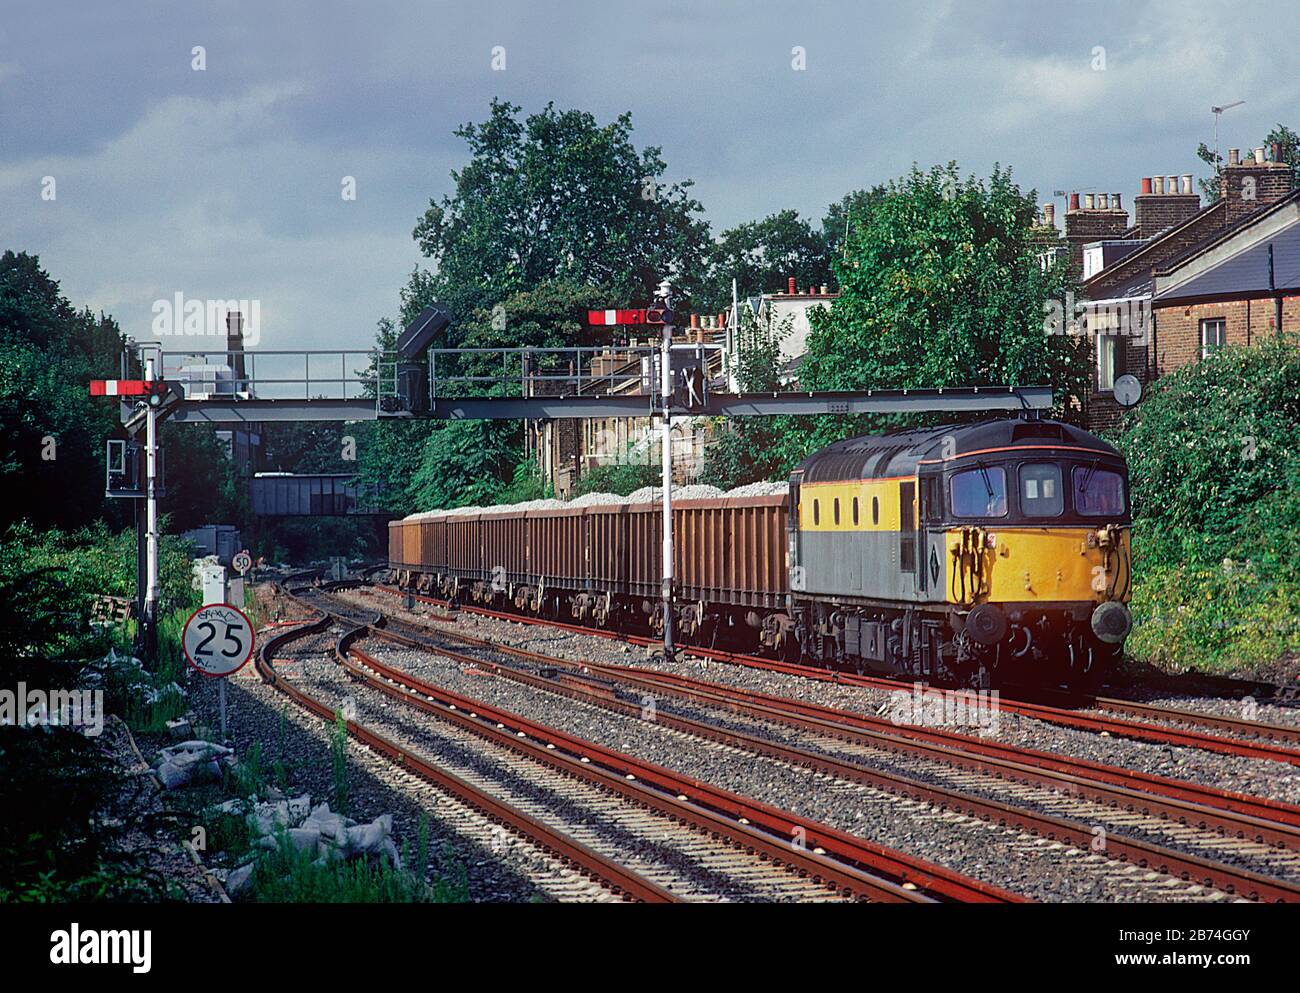 Une locomotive diesel de classe 33 numéro 33118 qui travaille un train de wagons de ballast chargés à côté de certains signaux de sémaphore à Kensington Olympia dans l'ouest de Londres. Banque D'Images